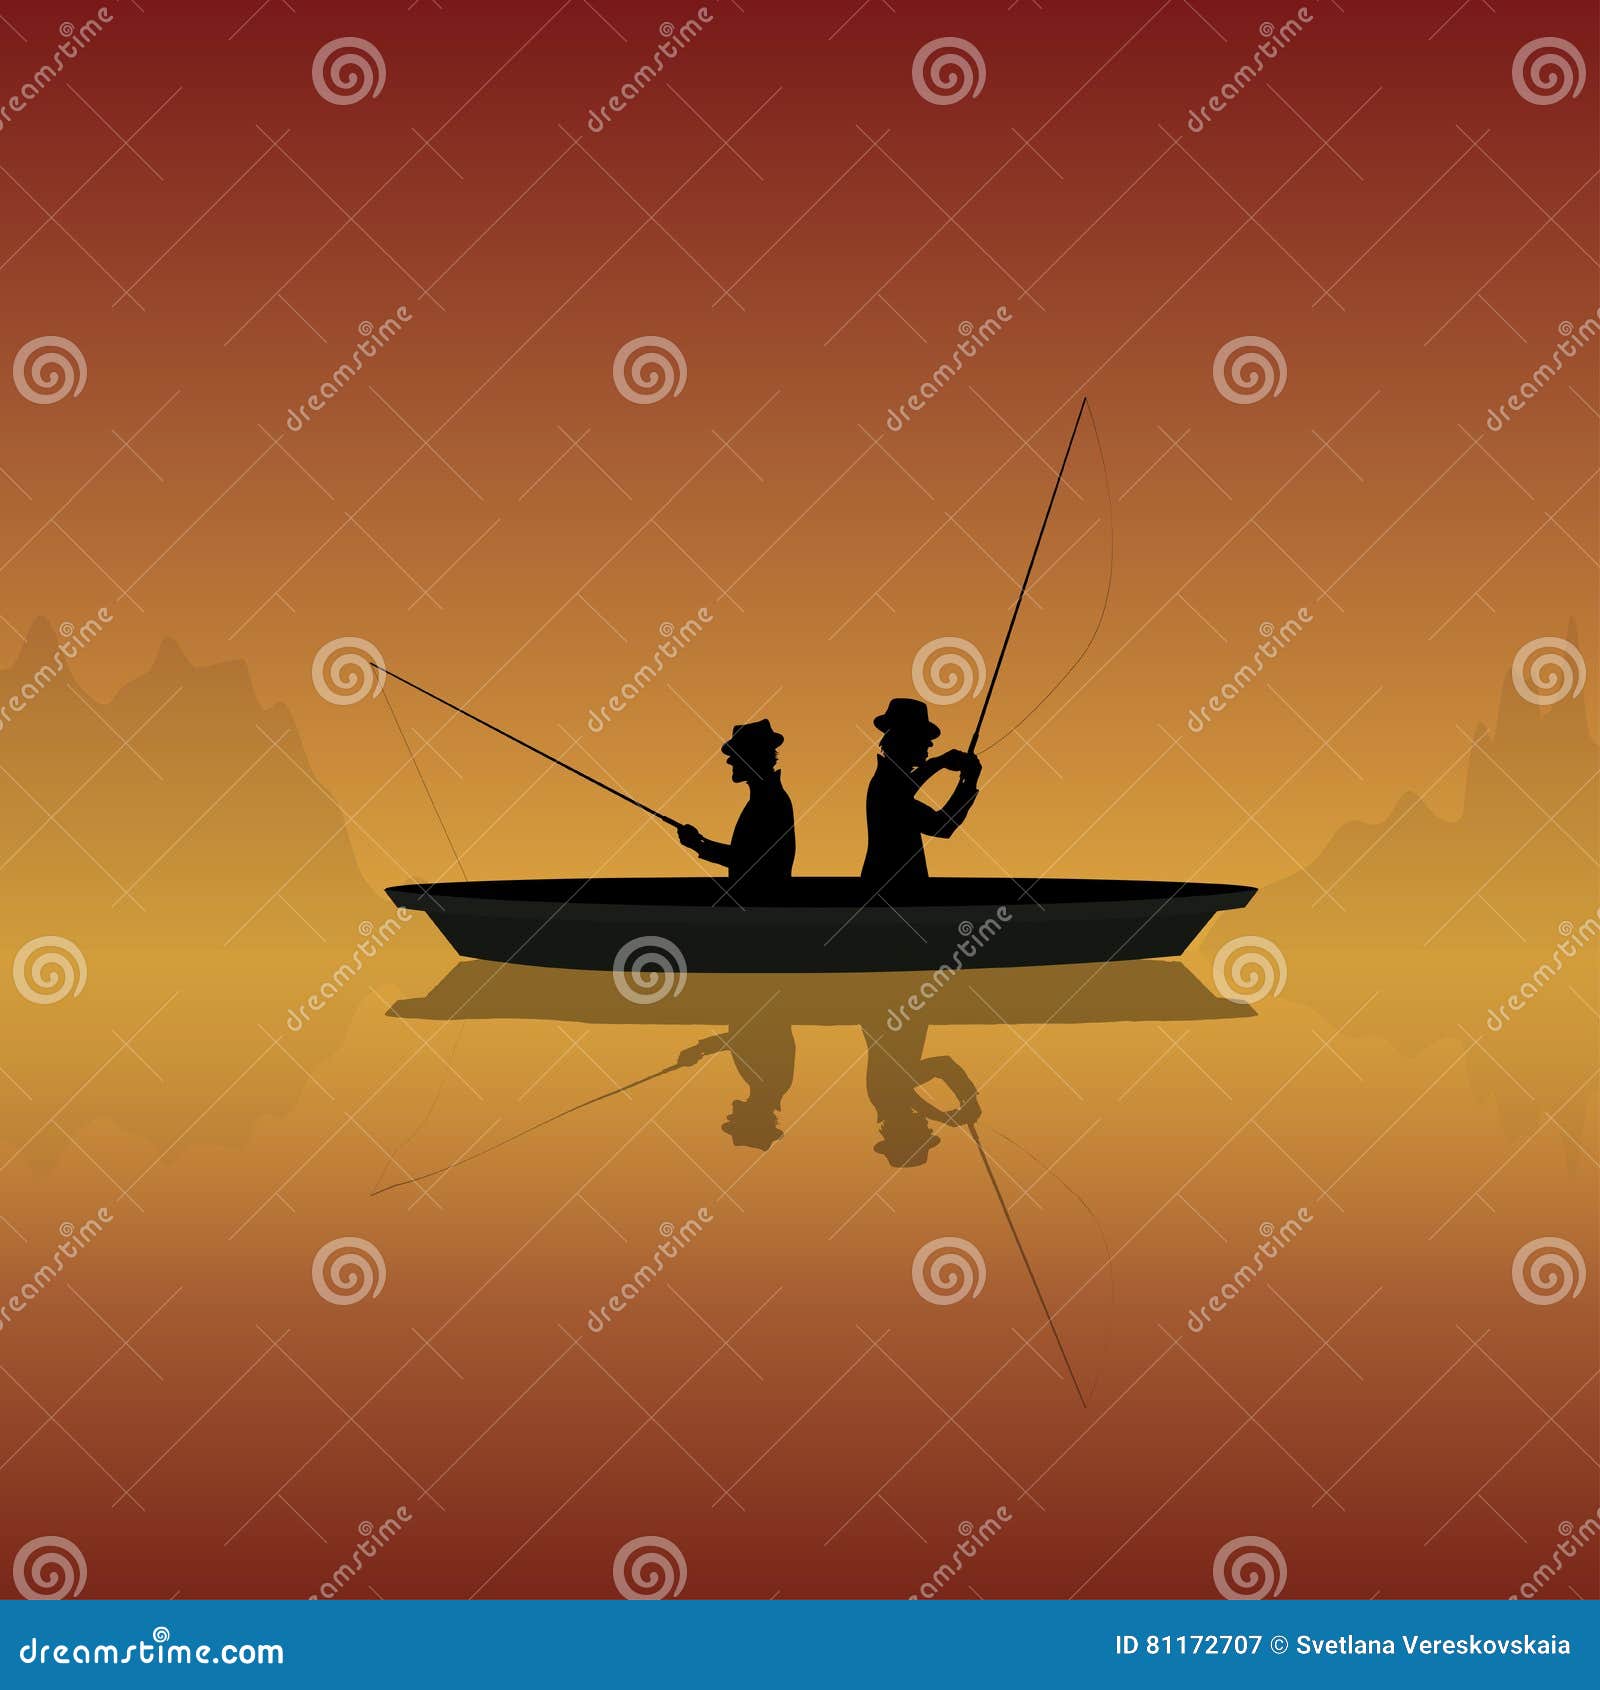 Um barco com varas de pescar e um pôr do sol ao fundo.